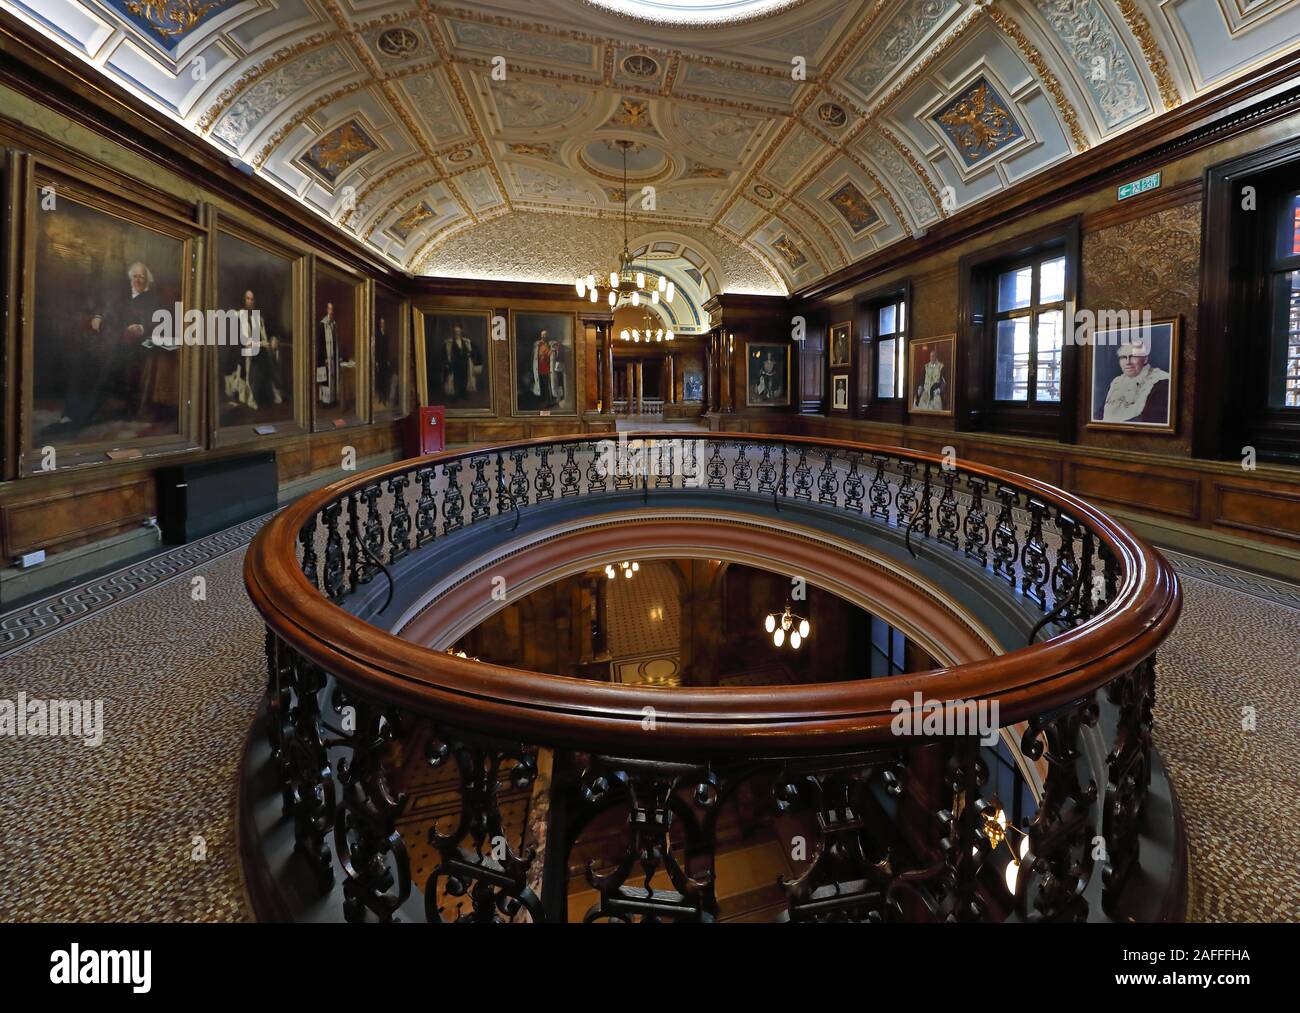 Porträtzimmer, Glasgow City Chambers, Rathaus, George Square, Strathclyde, Schottland, Großbritannien, G2 1DU Stockfoto